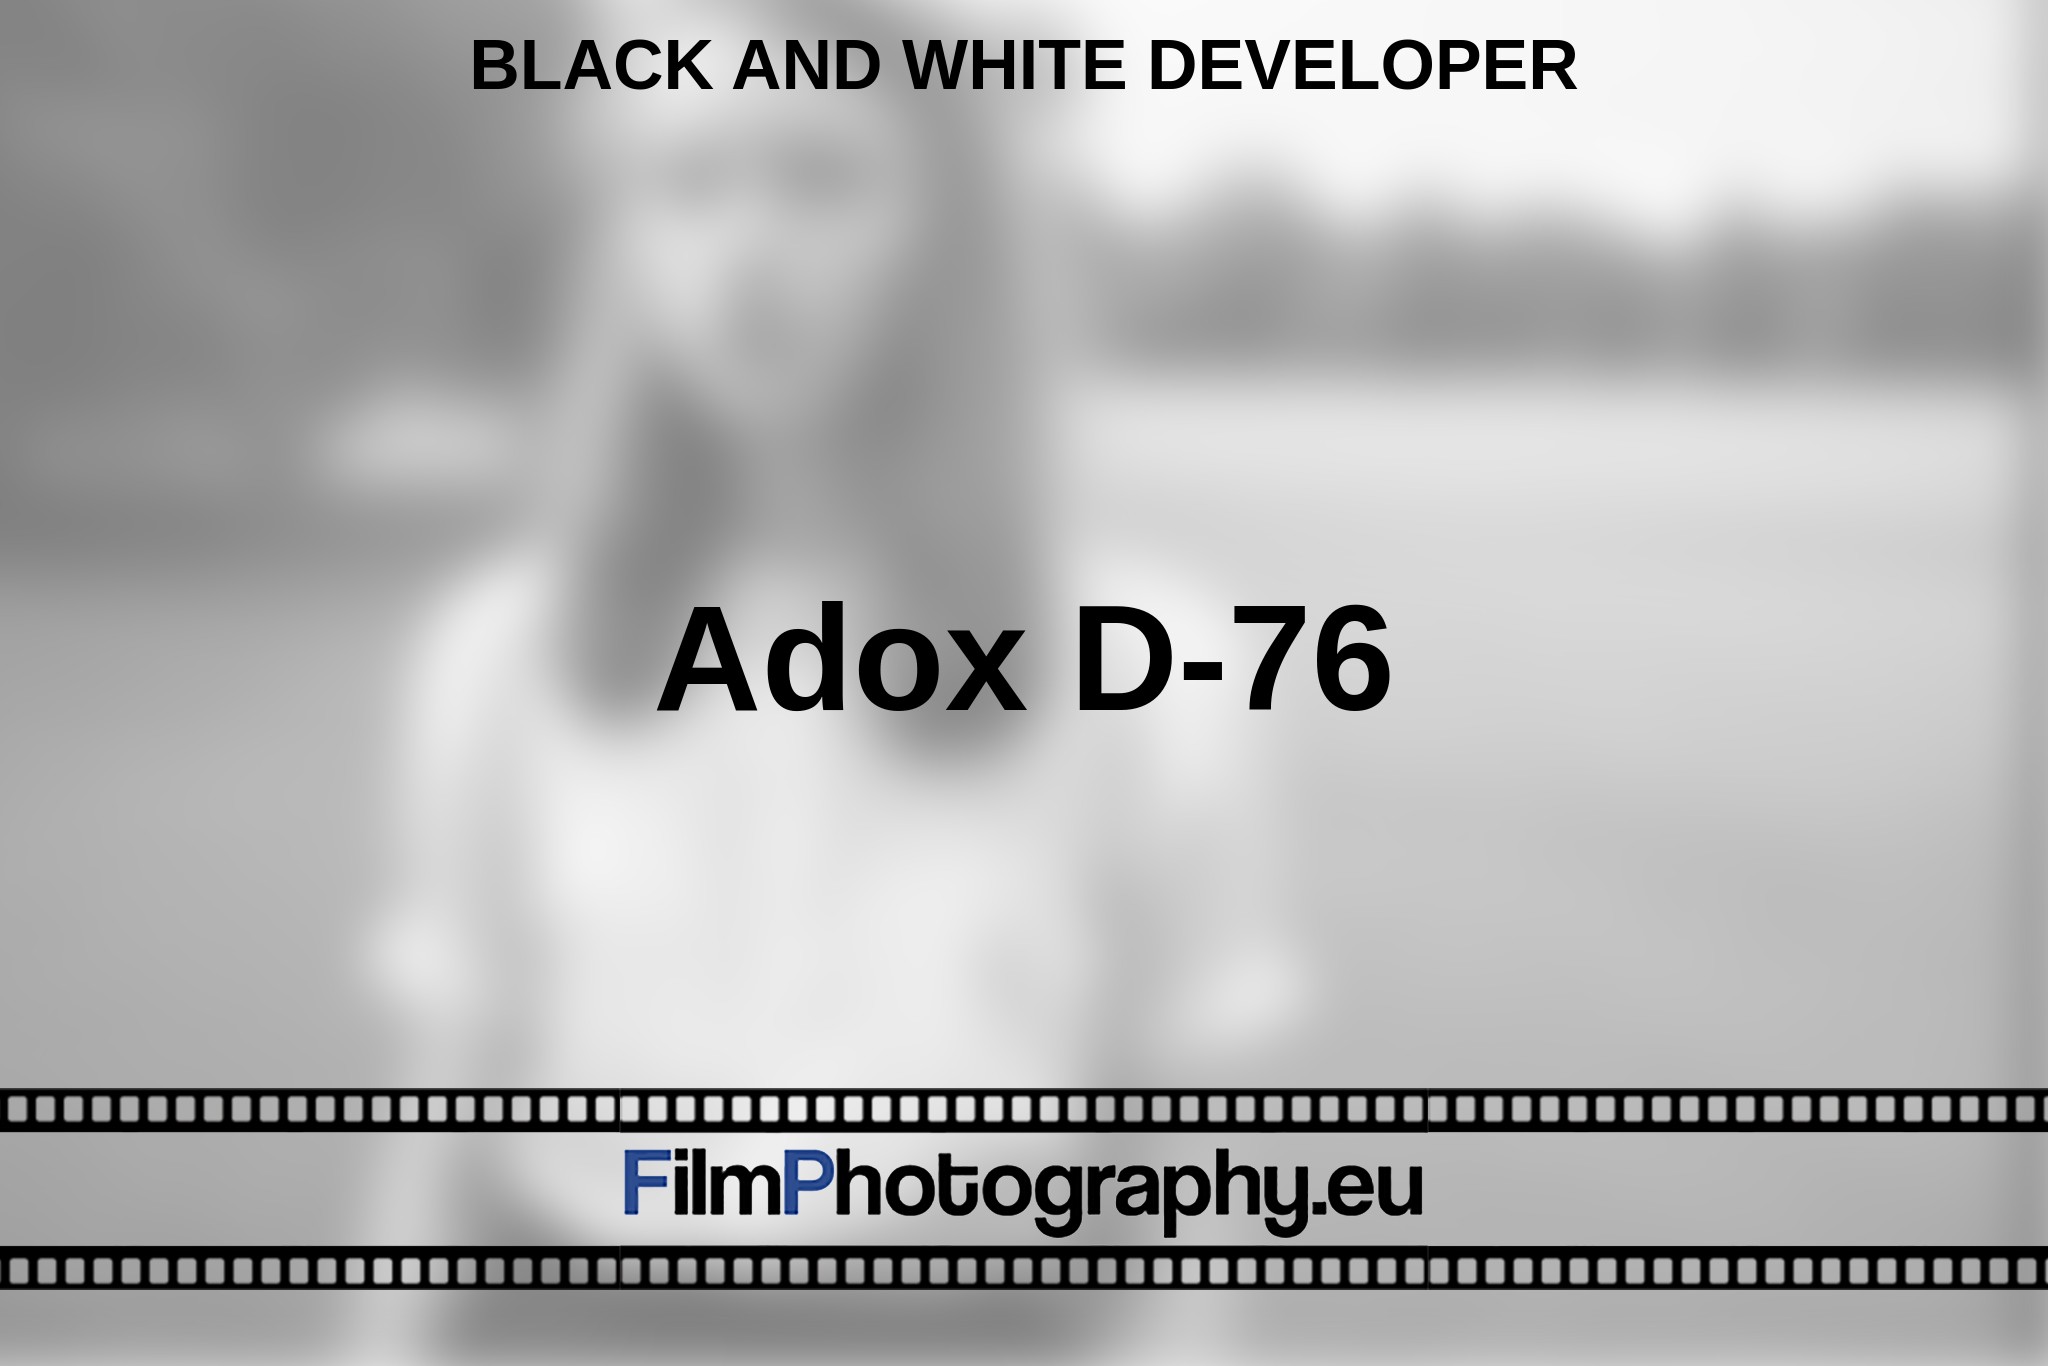 adox-d-76-black-and-white-developer-en-bnv.jpg